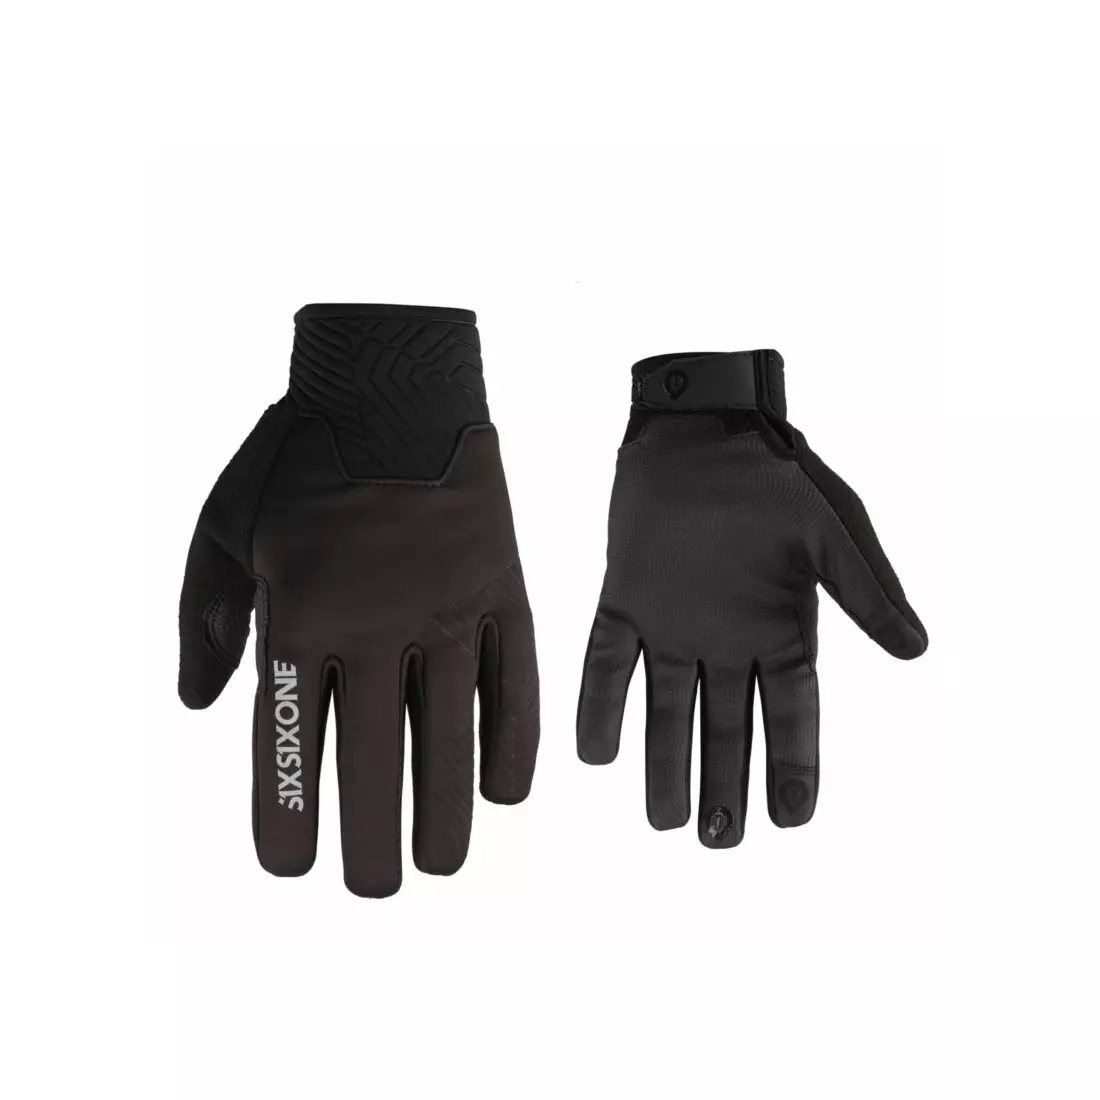 661 RAIJIN men's cycling gloves, black